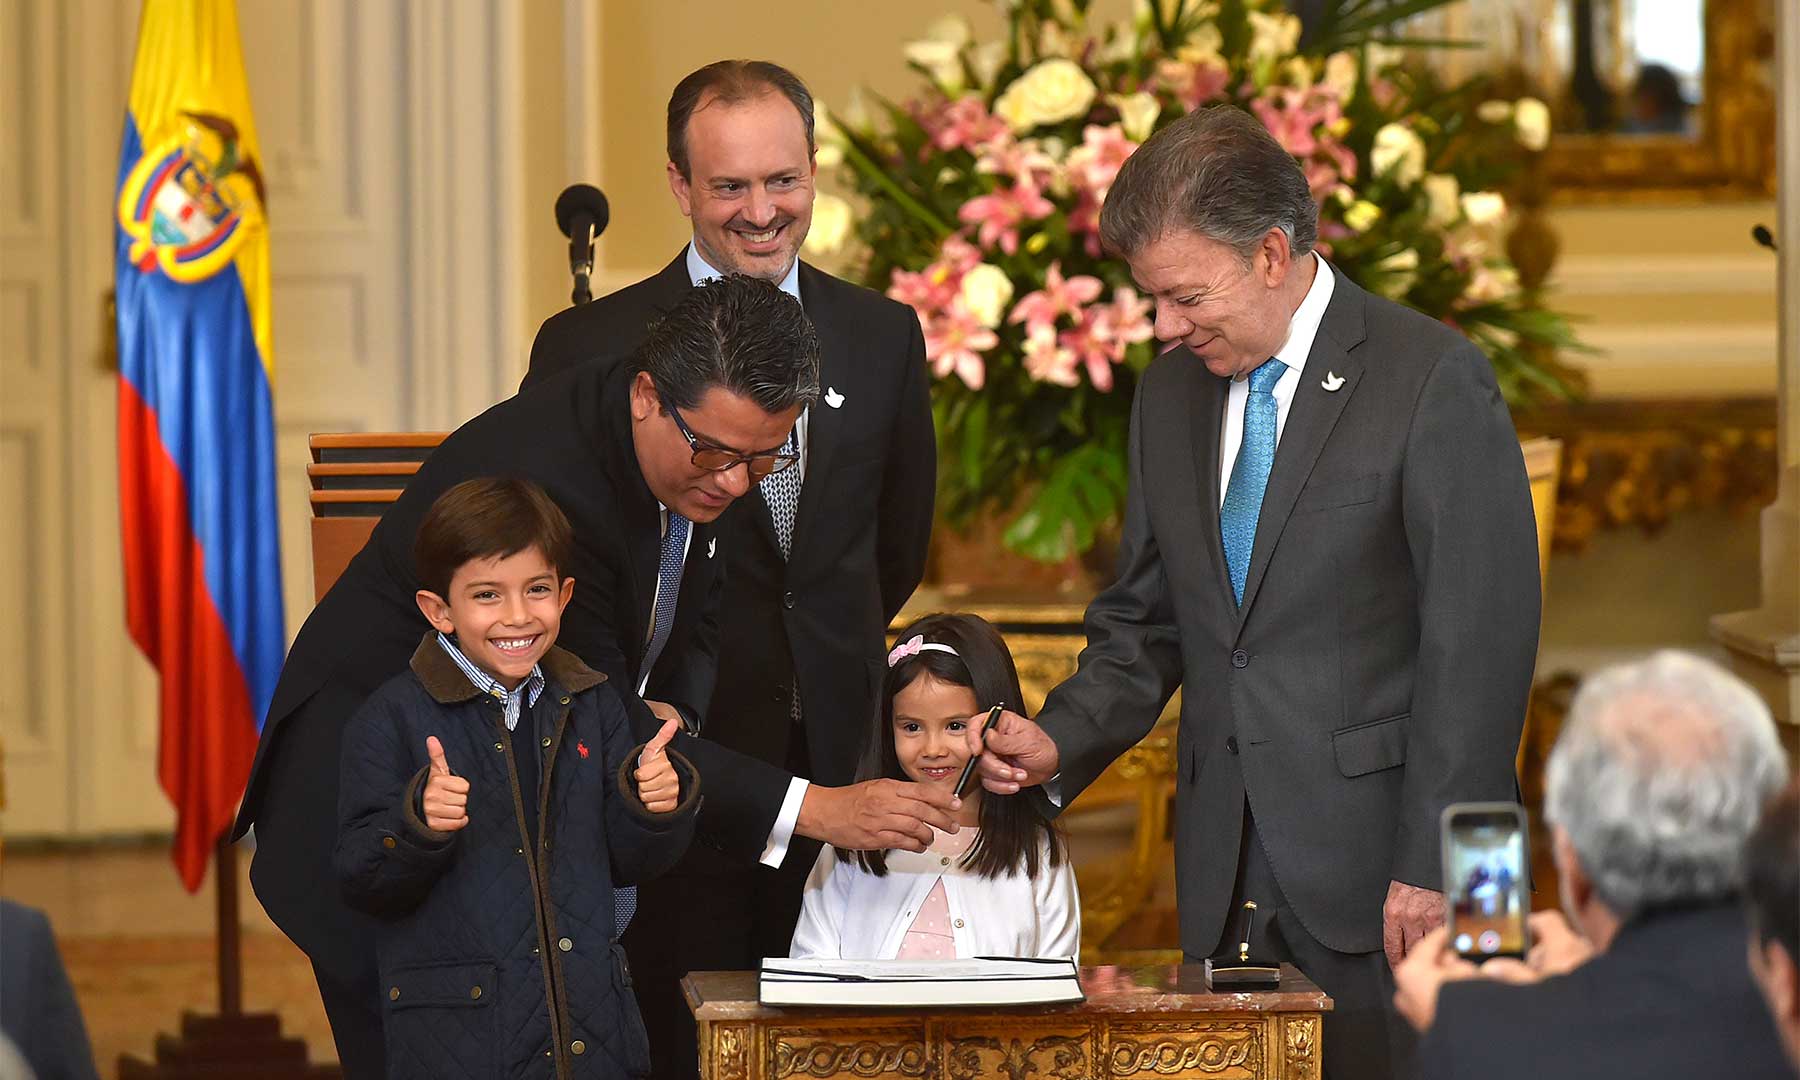 En la toma de posesión de Germán Arce como Ministro de Minas y Energía, efectuada este lunes en la casa presidencial, el nuevo integrante del Gabinete estuvo acompañado por sus pequeños hijos Simón y Sofía.